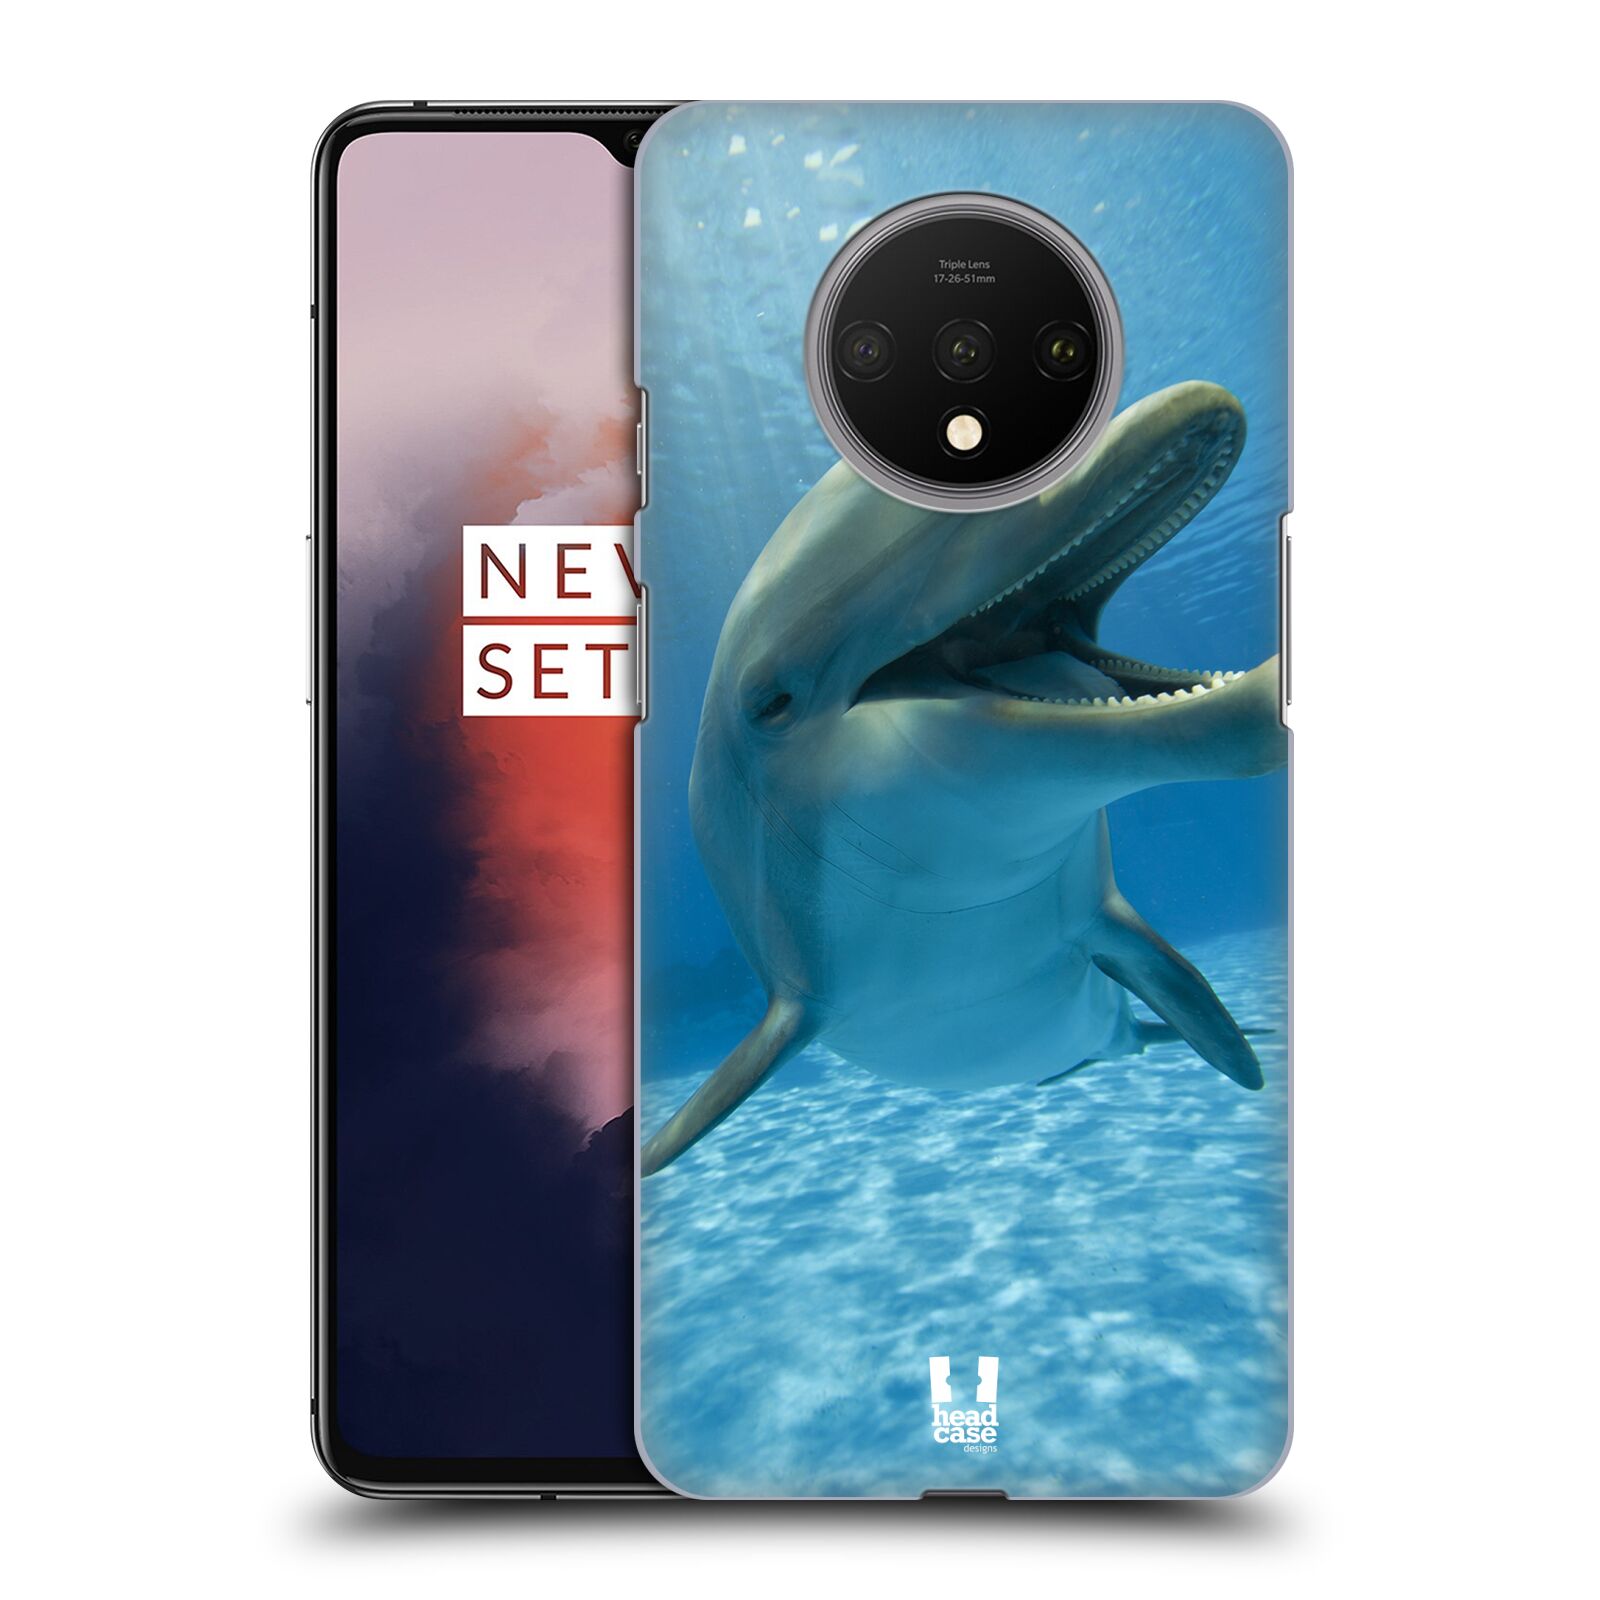 Zadní obal pro mobil OnePlus 7T - HEAD CASE - Svět zvířat delfín v moři